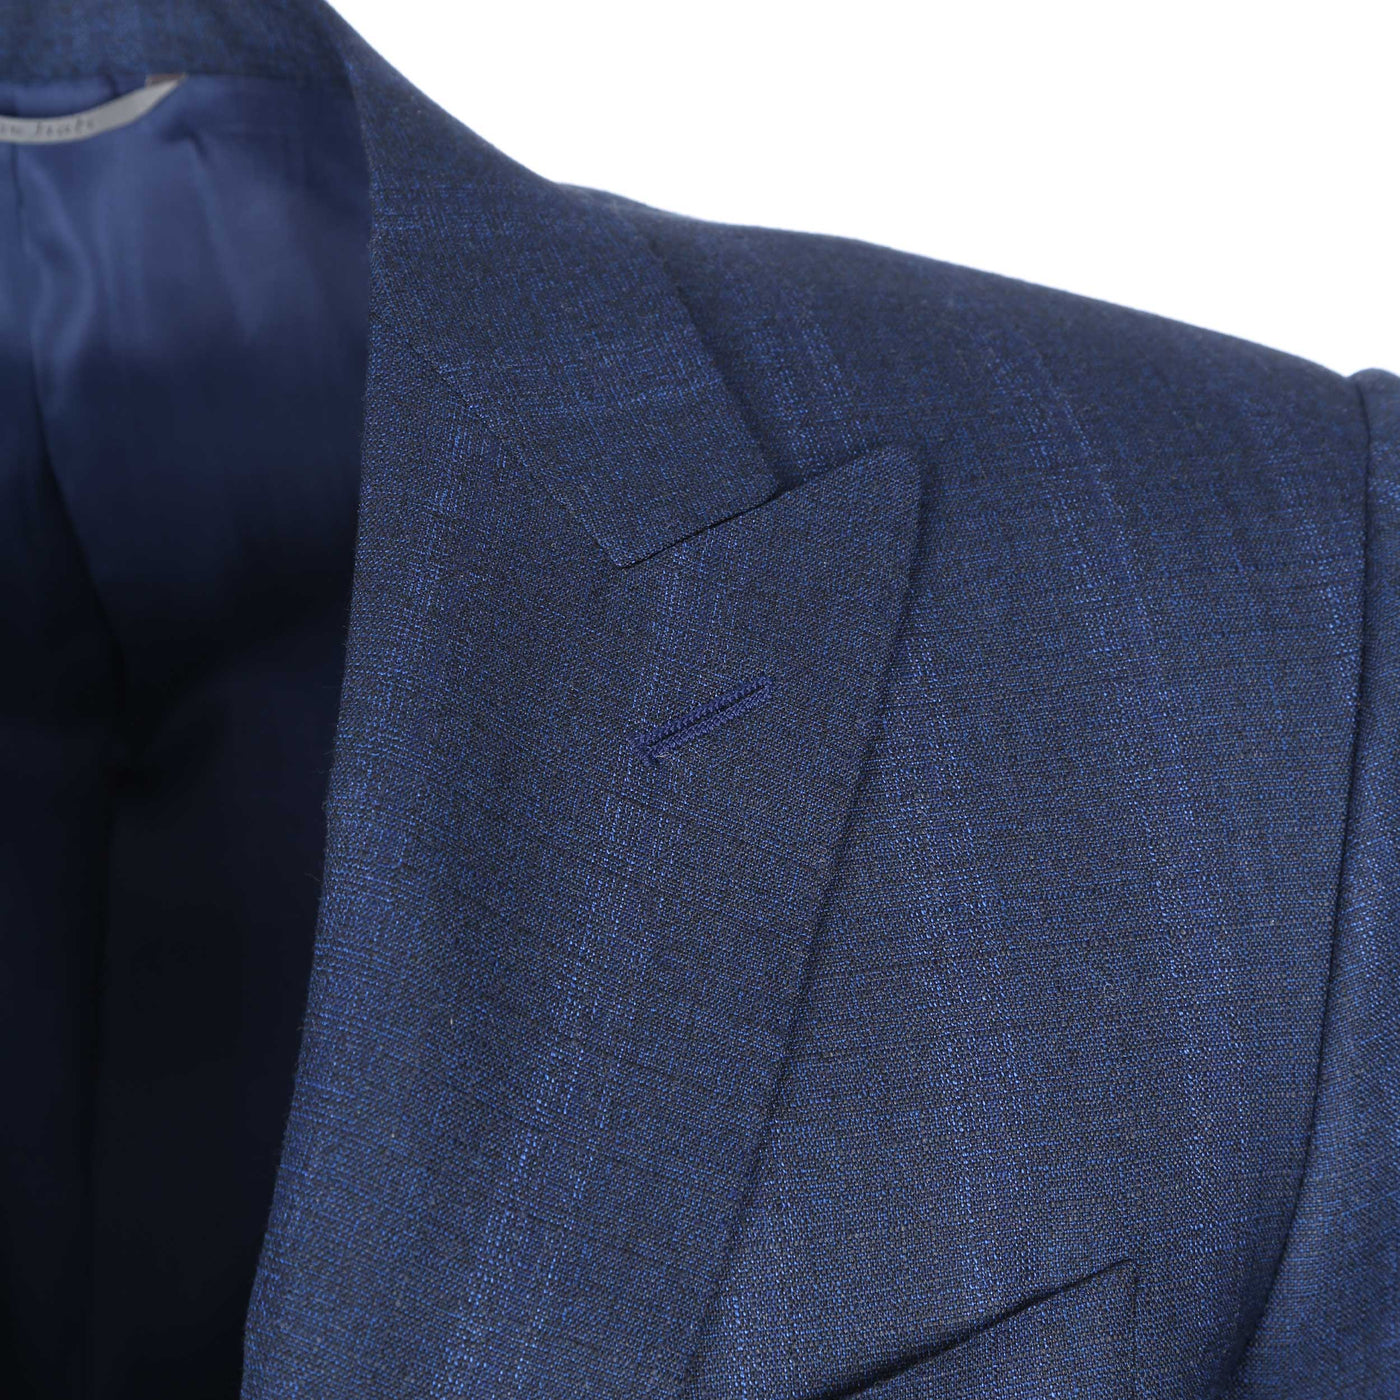 Canali Peak Lapel Milano Suit in Navy Blue Lapel